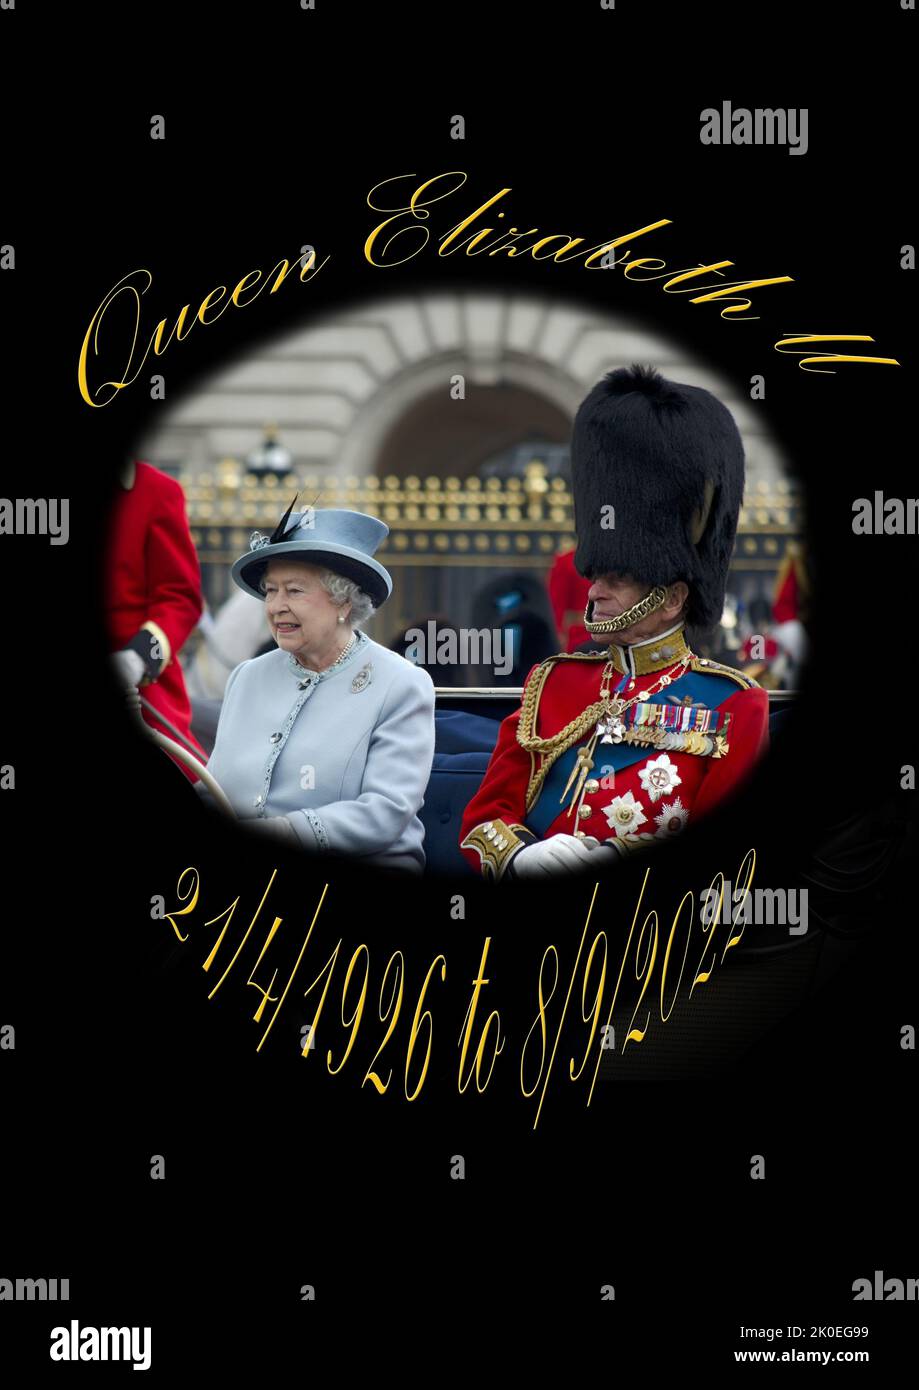 Her Majesty Queen Elizabeth II Lifeline Stock Photo